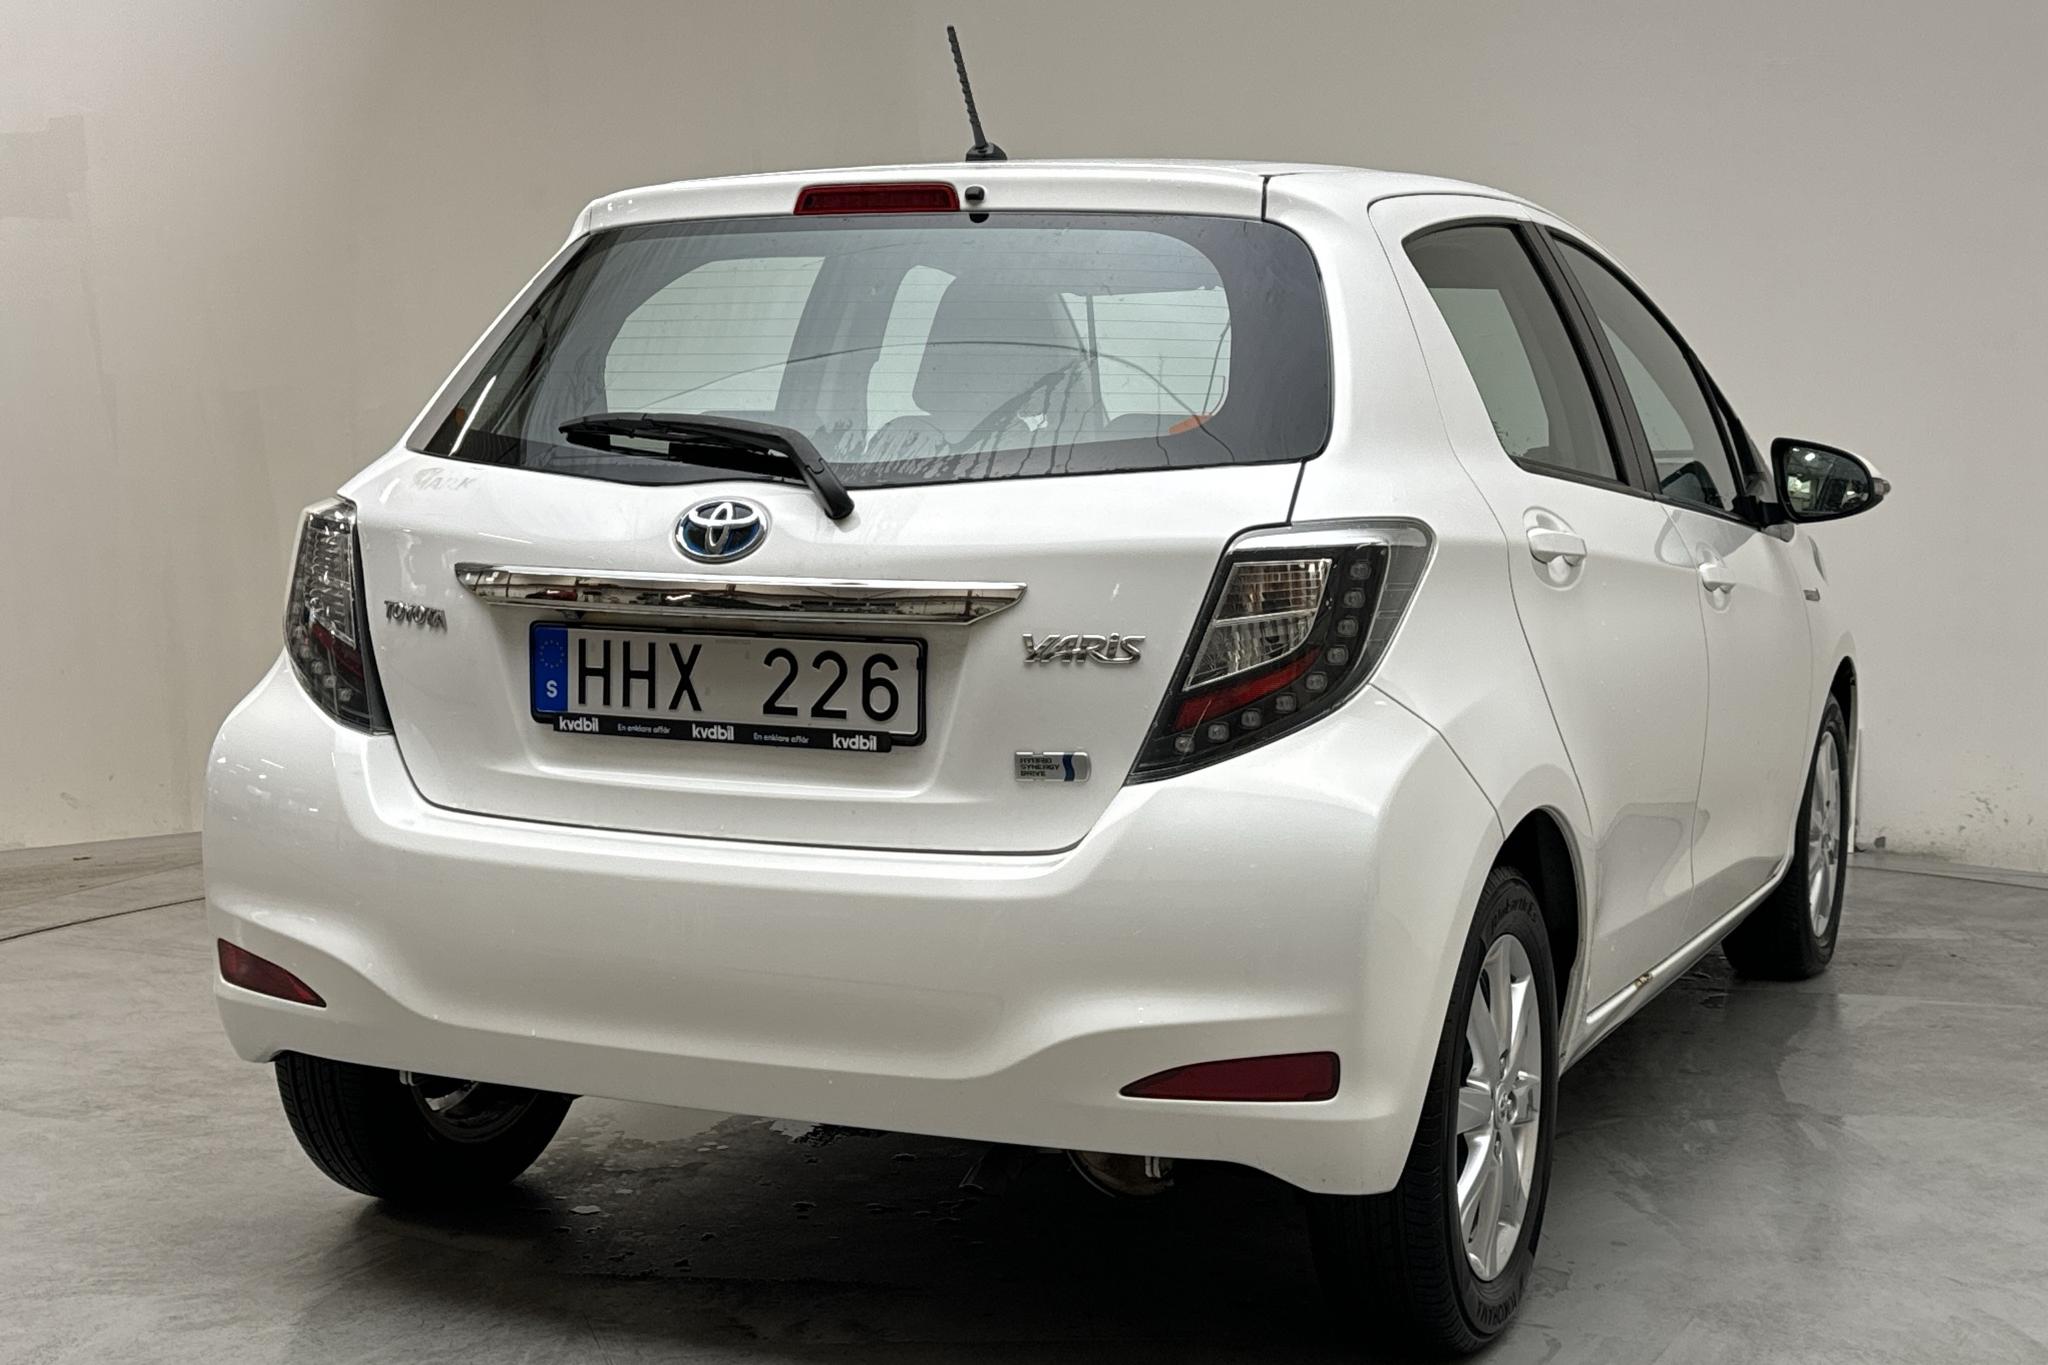 Toyota Yaris 1.5 HSD 5dr (75hk) - 56 740 km - Automatic - white - 2014